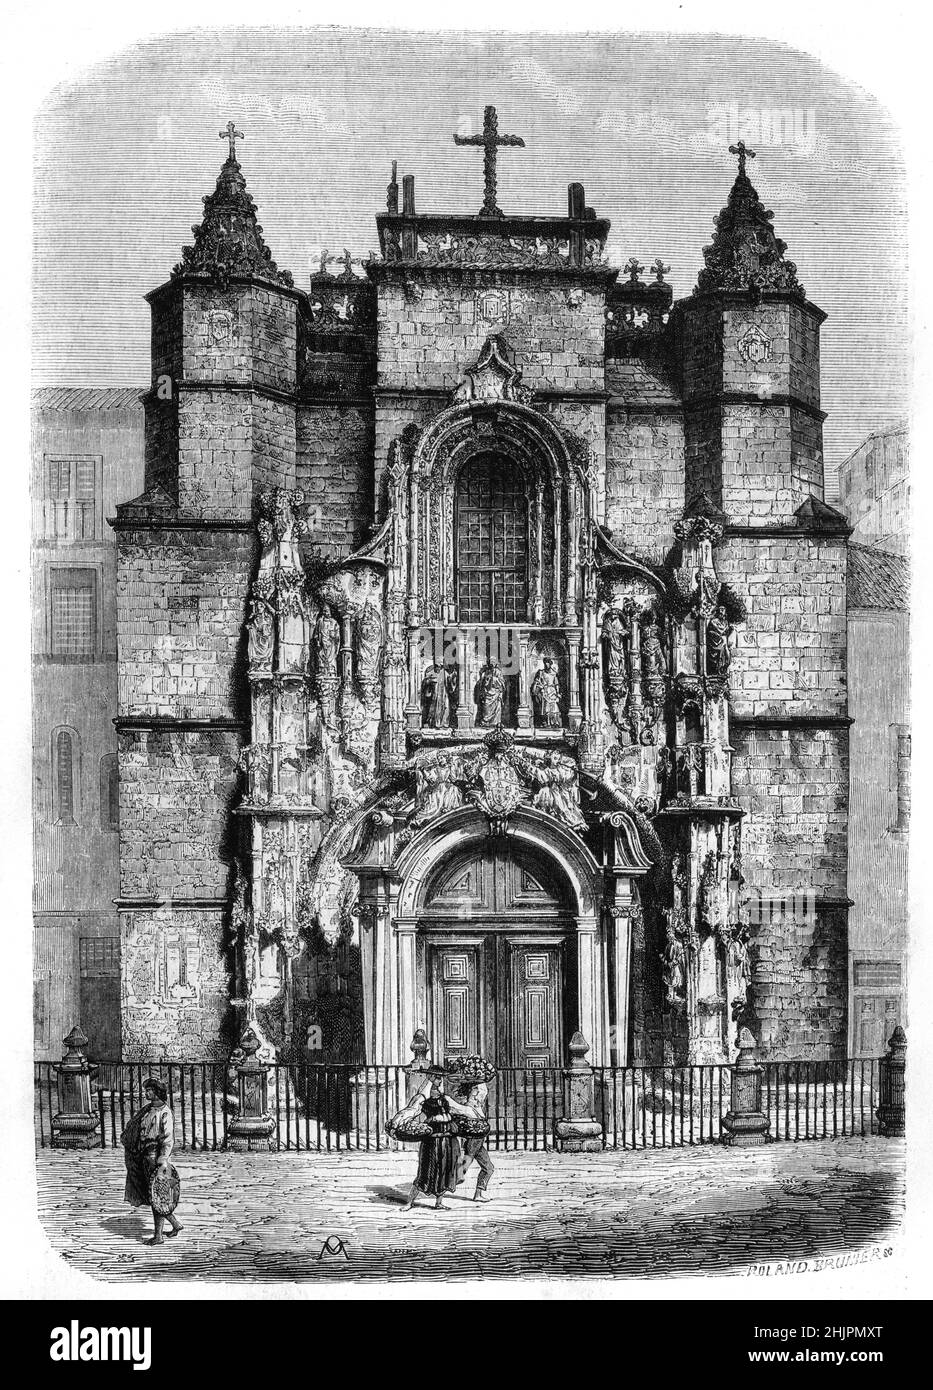 Manuelinische Fassade oder gotischer Eingang und Tür zum Kloster oder Kloster Santa Cruz Coimbra Portugal. Vintage Illustration oder Gravur 1865 Stockfoto